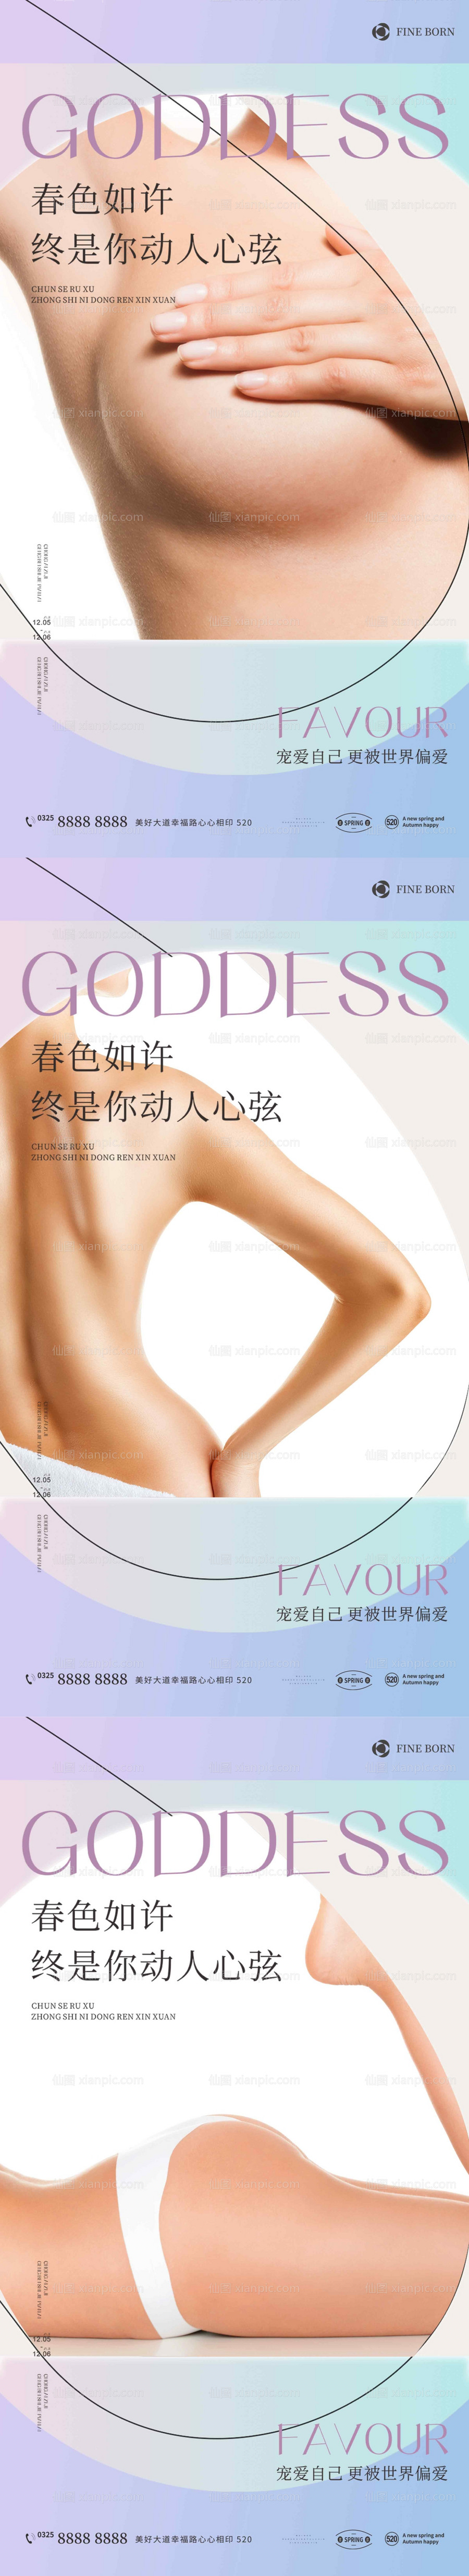 素材乐-医美女人塑形减肥系列海报 